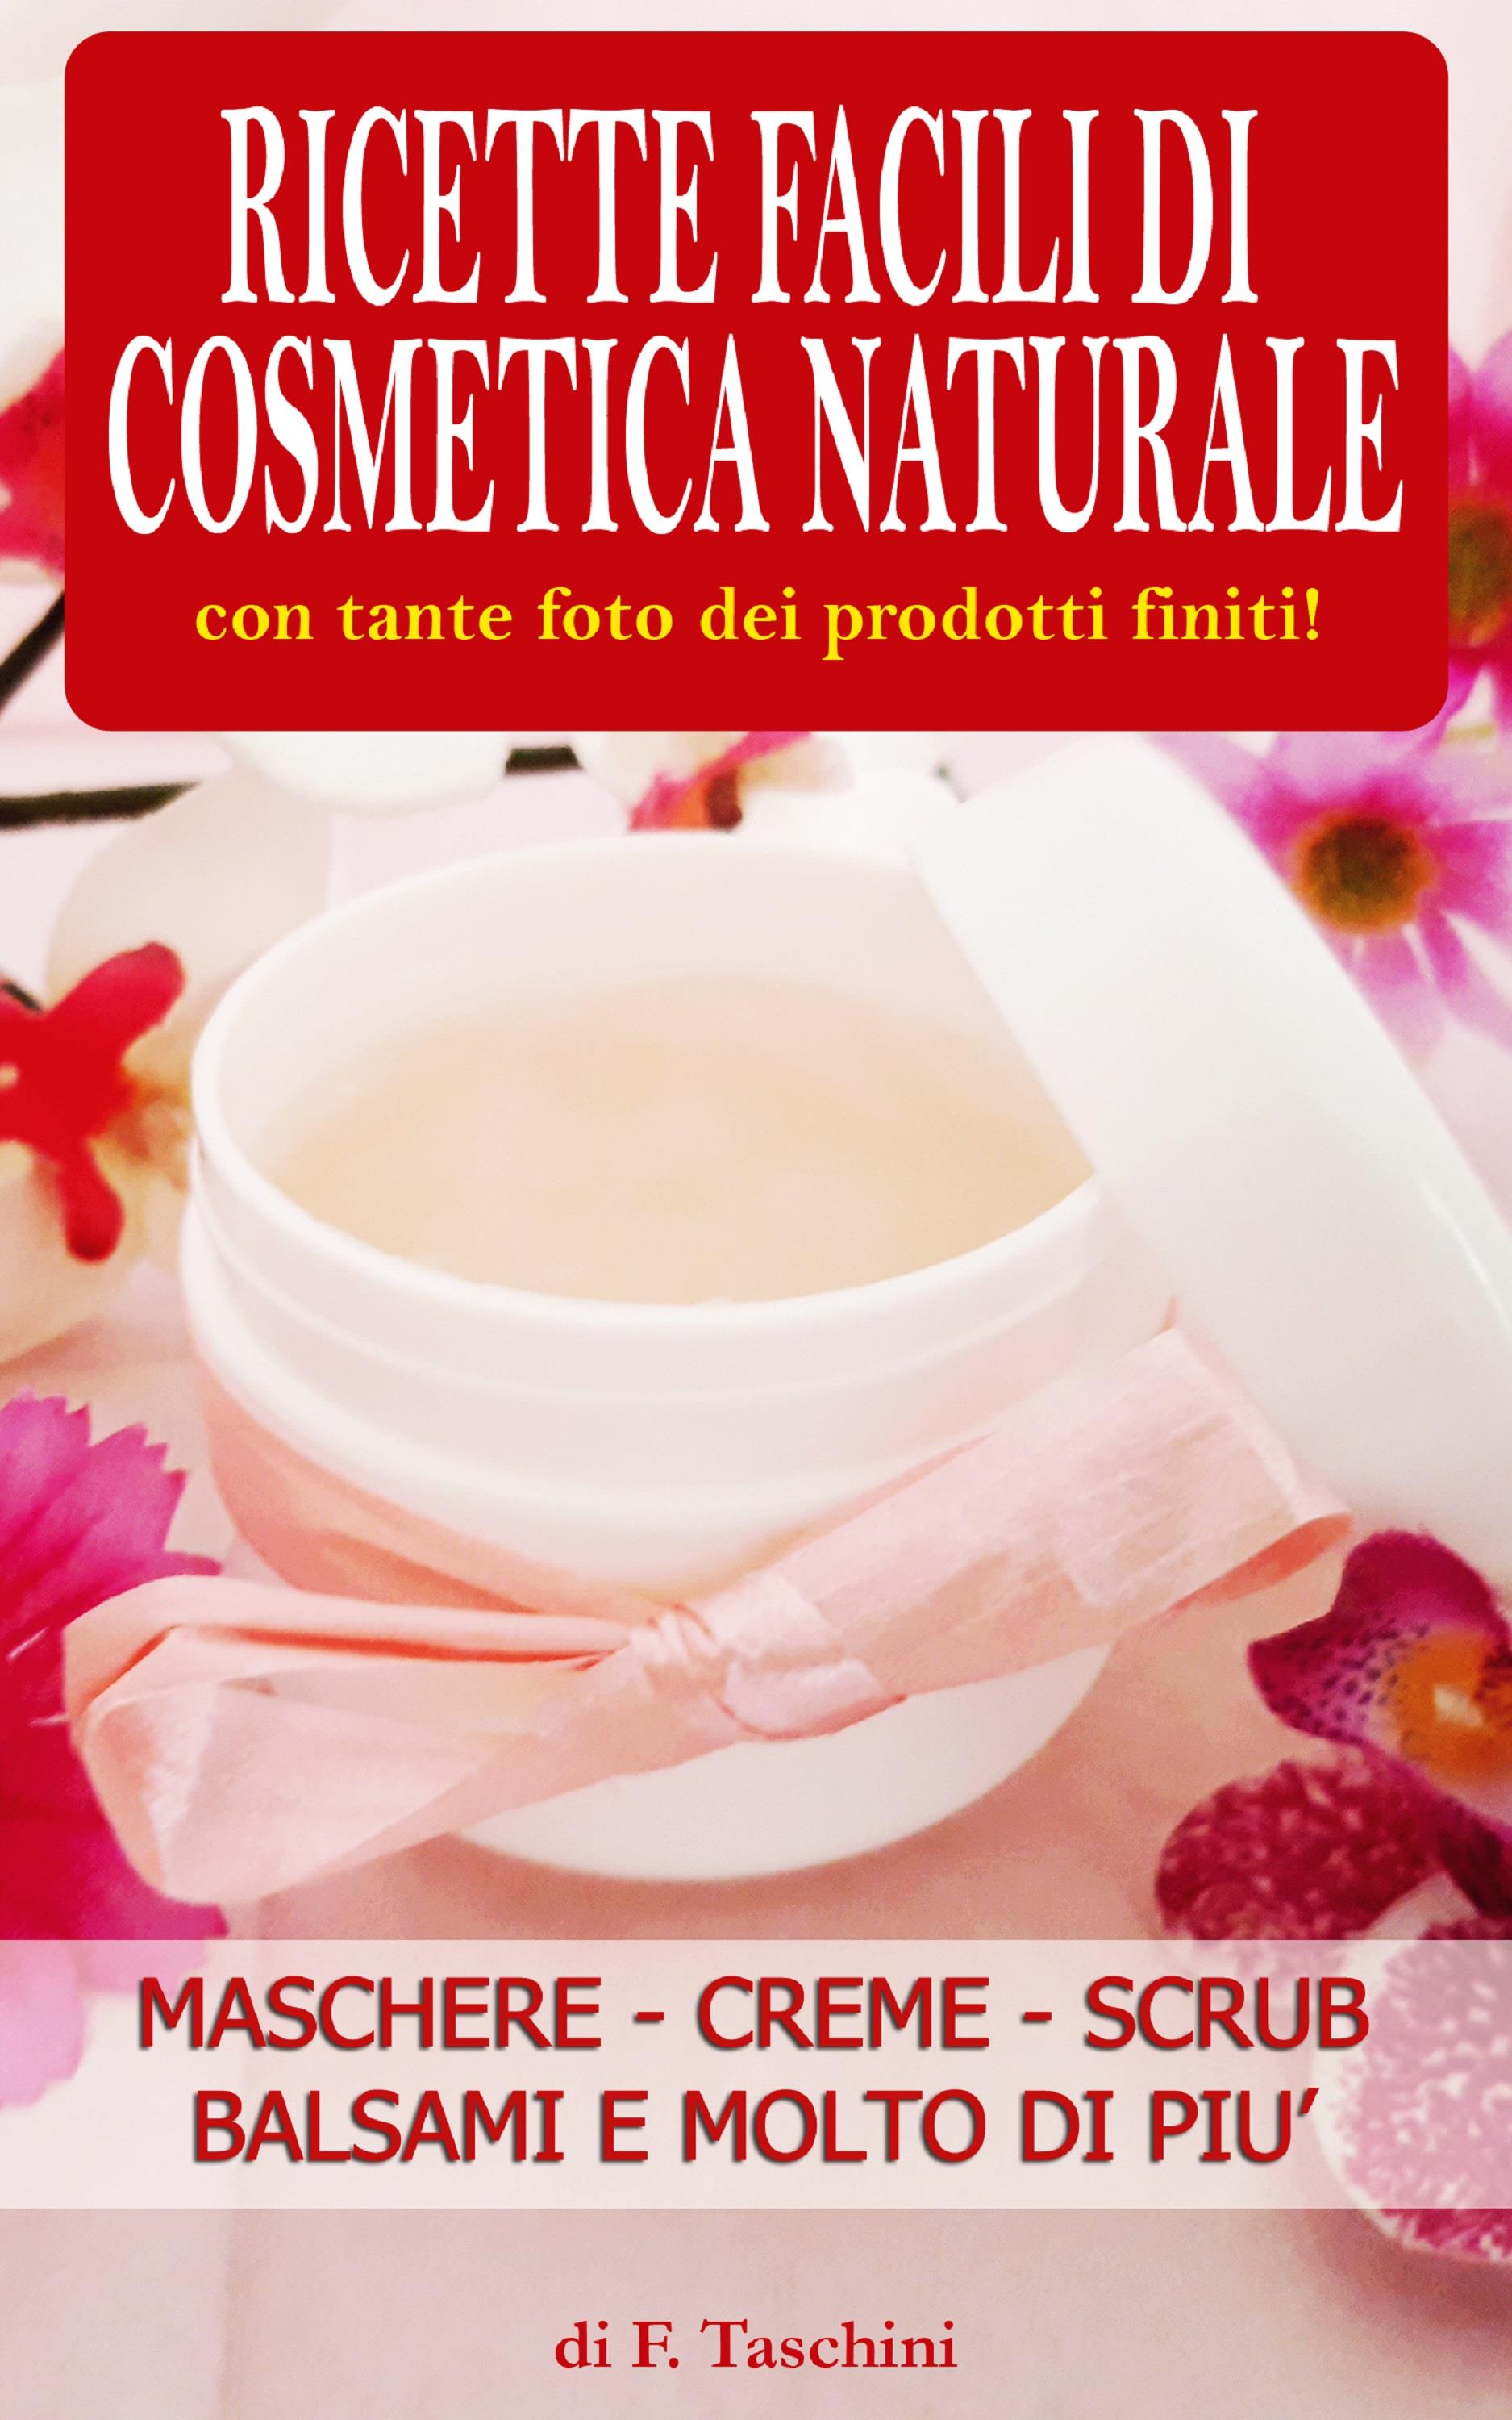 Ricette facili di Cosmetica Naturale